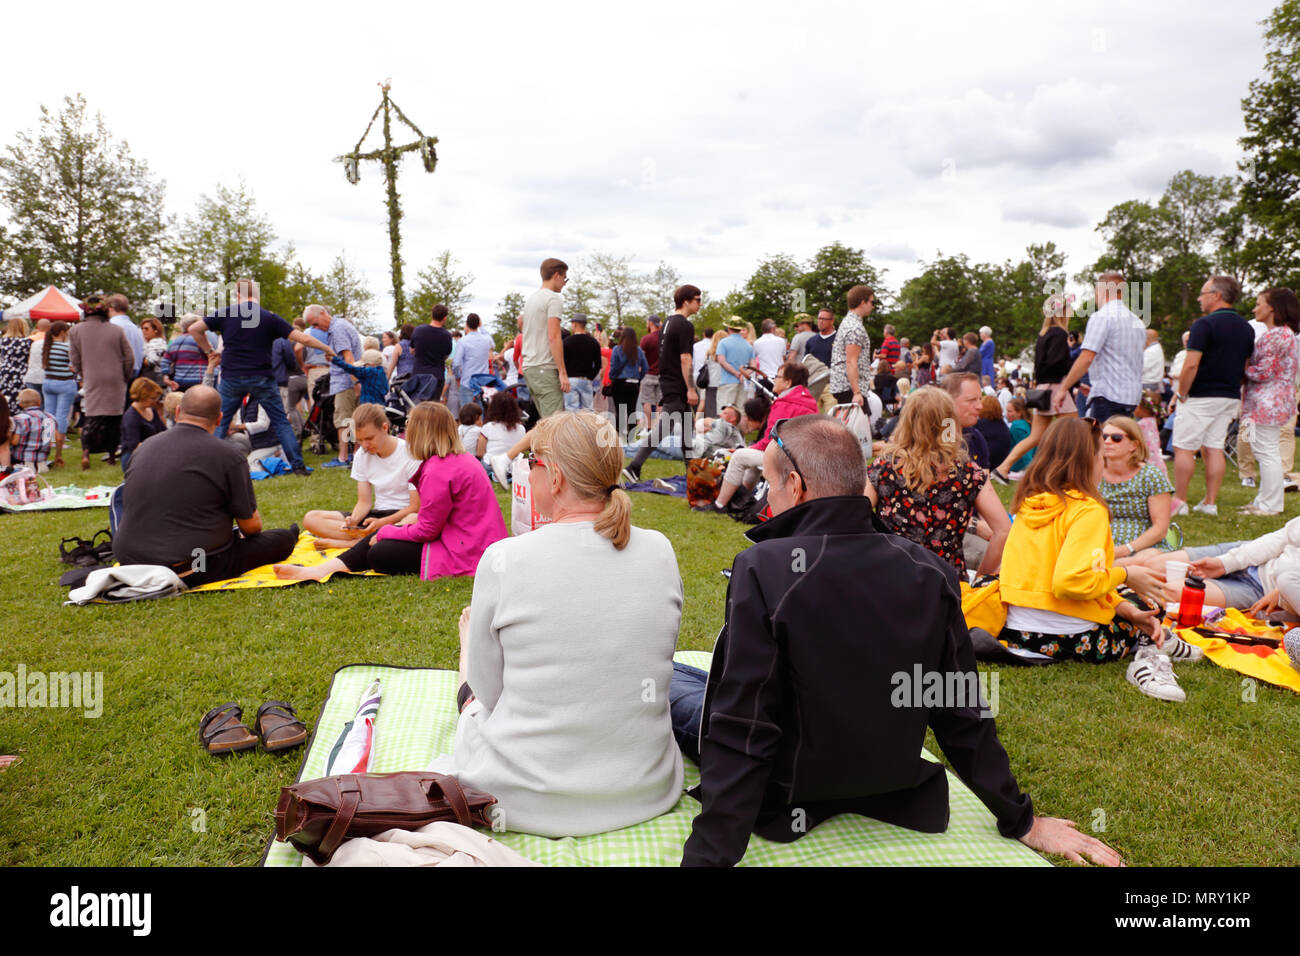 Mariefred, Svezia - 23 Giugno 2017: la gente di tutte le età celebra in pubblico la vigilia di mezza estate holliday evento. Foto Stock